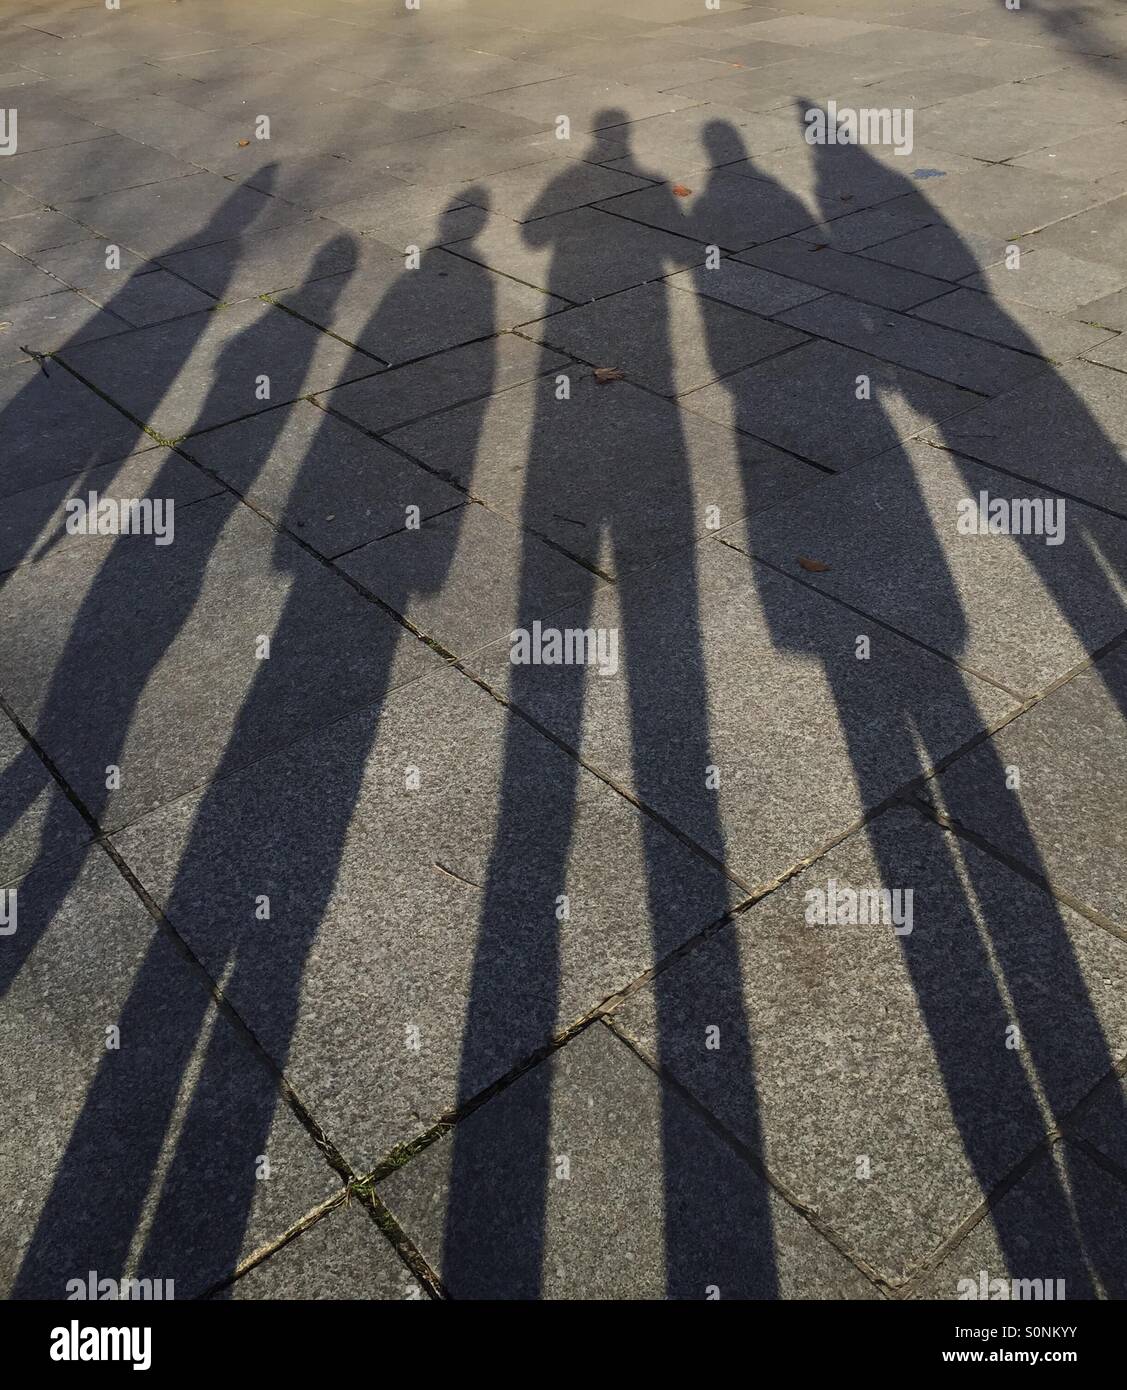 Shadows on the floor Stock Photo - Alamy